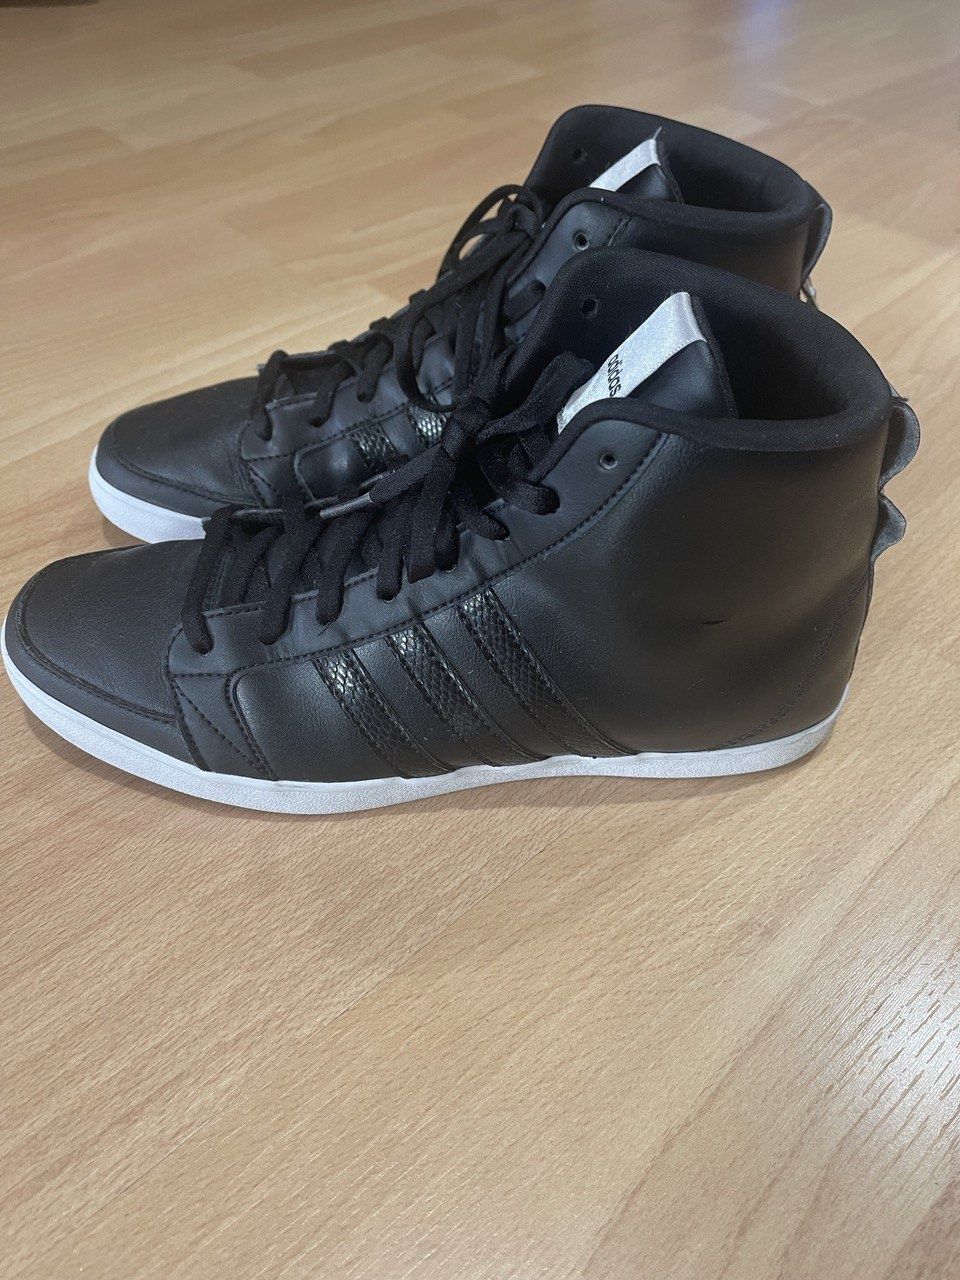 Кеды ботинки Adidas оригиналы 41 размер состояние новых